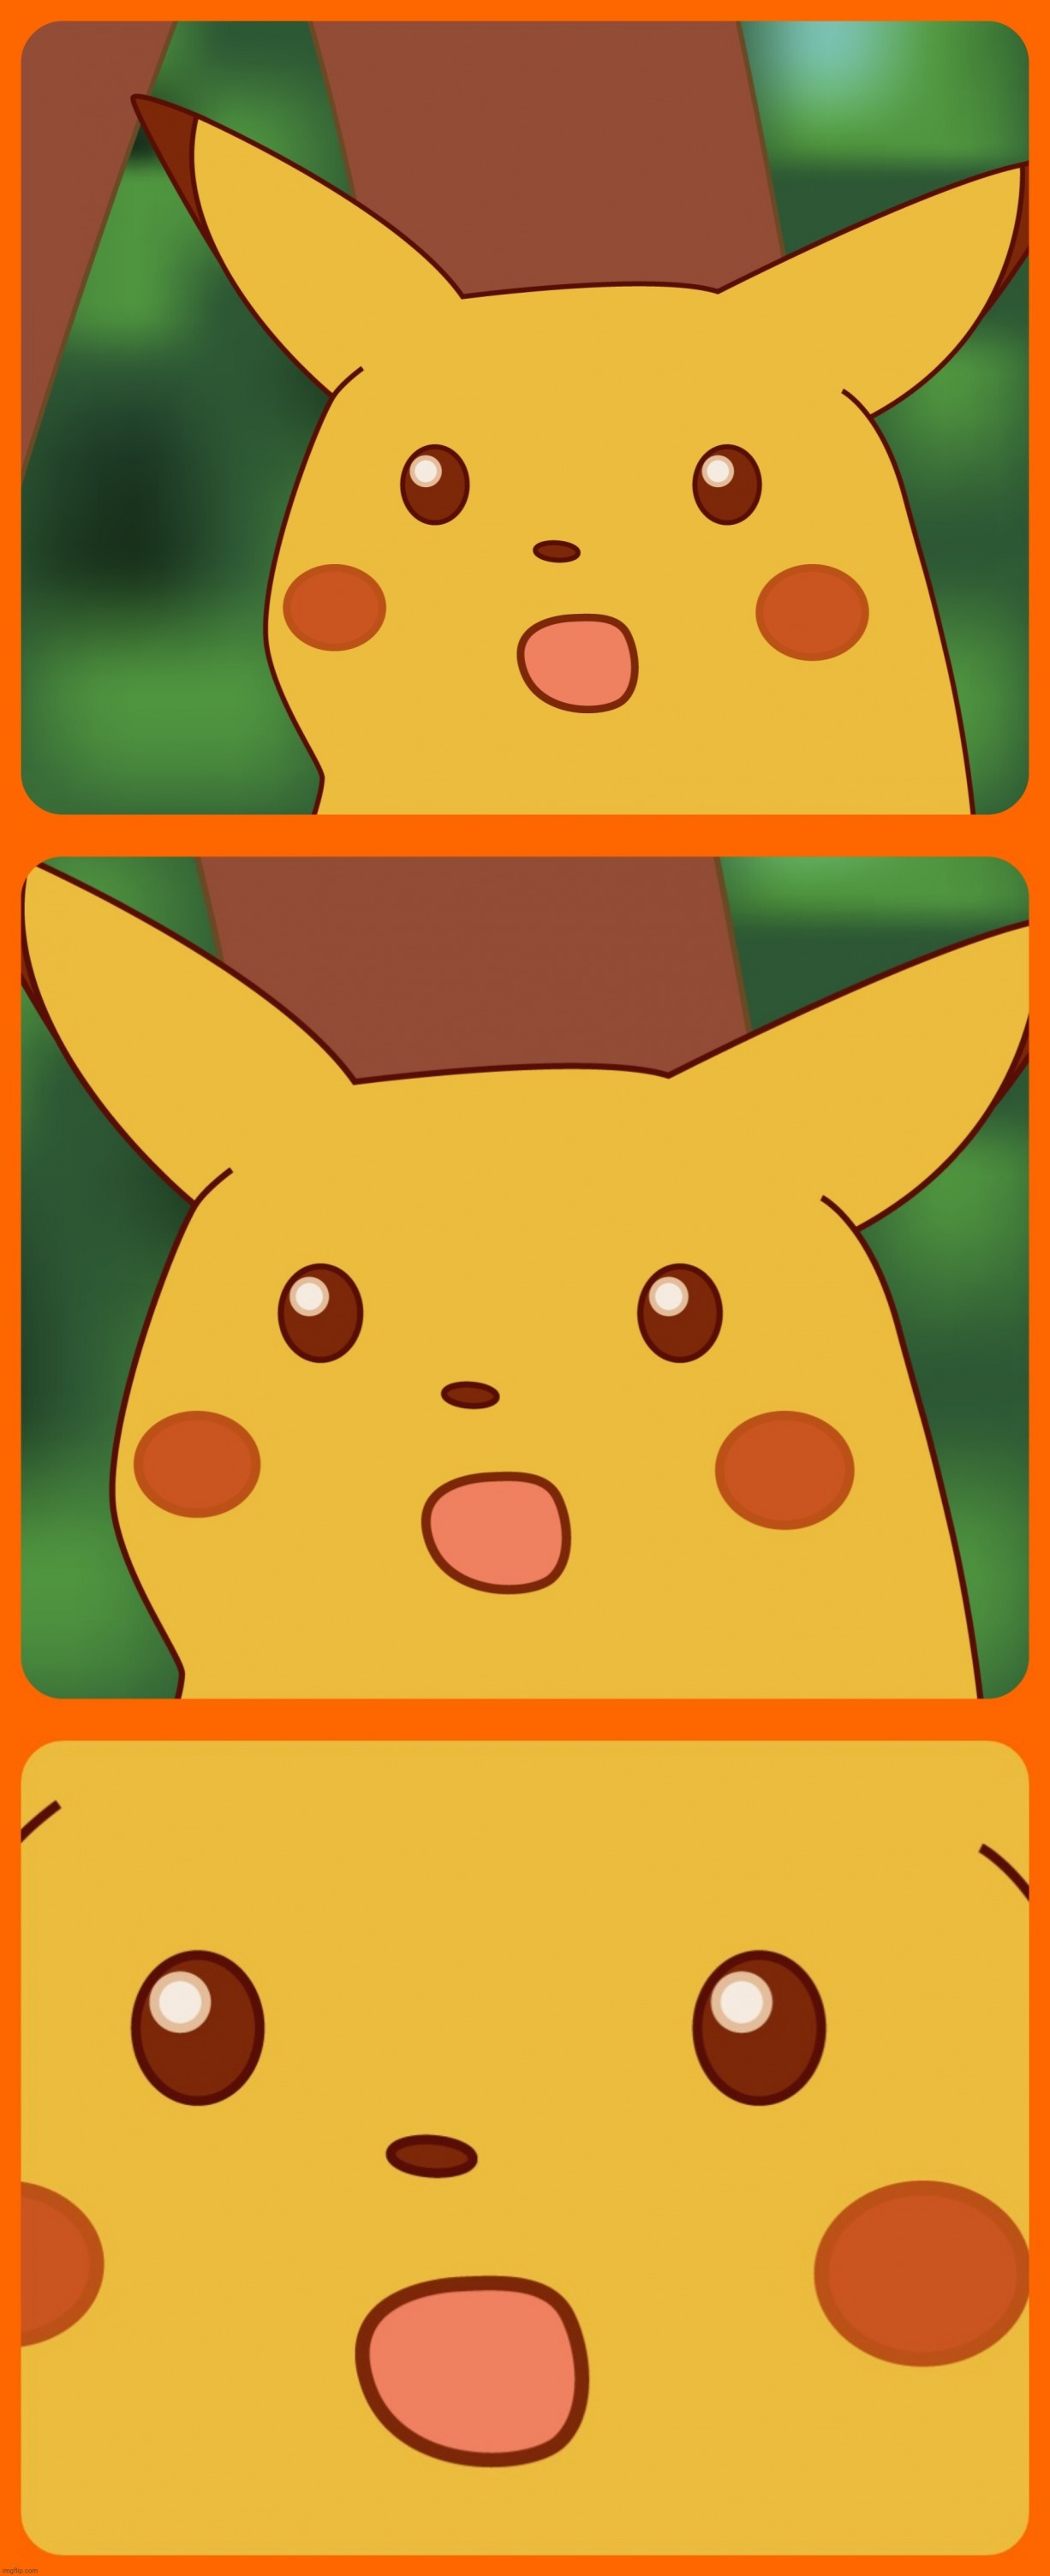 Pikachu Surprised Surprised Surprised Blank Template Imgflip